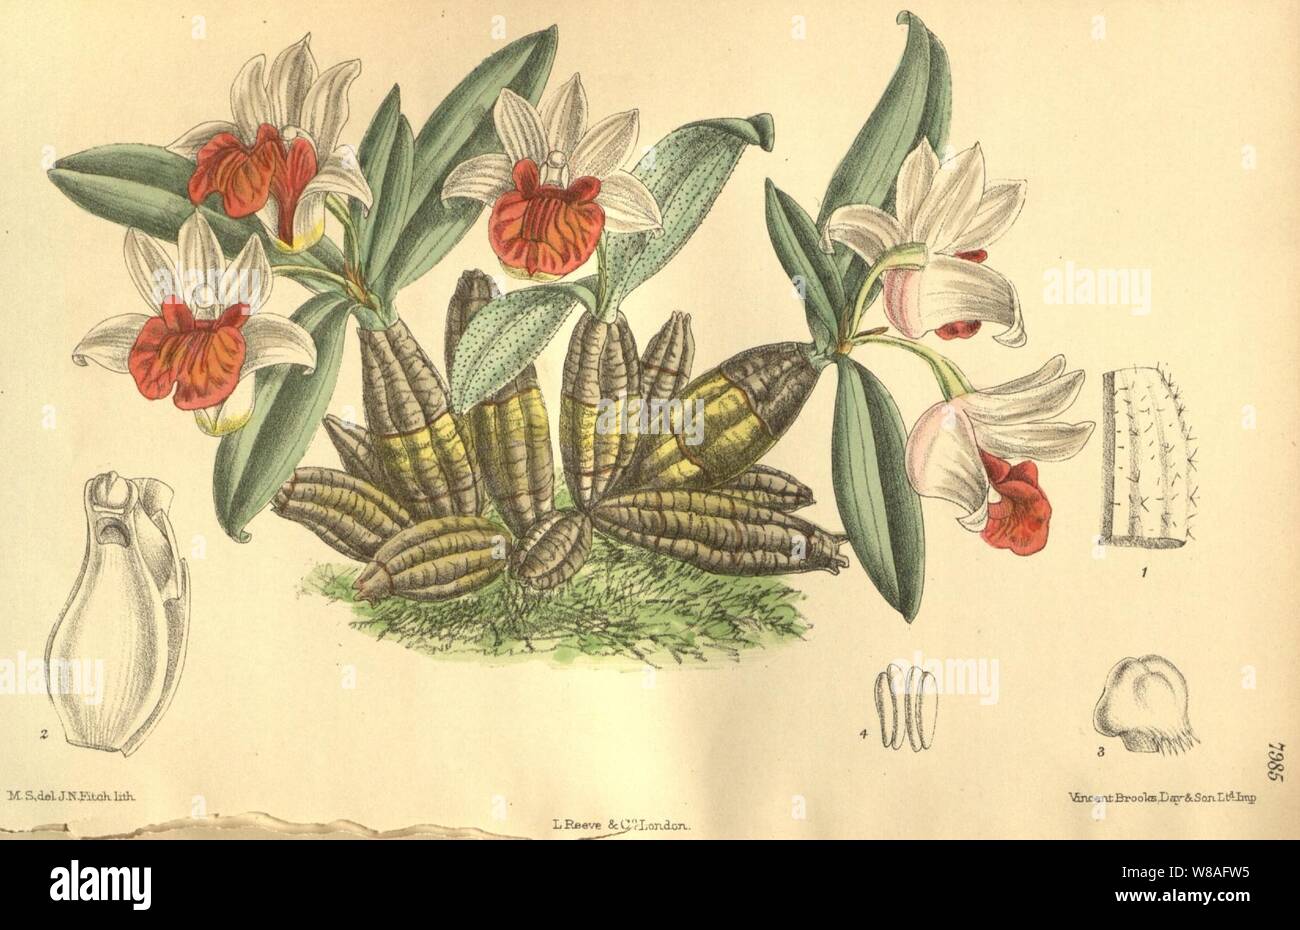 Dendrobium bellatulum. Stock Photo